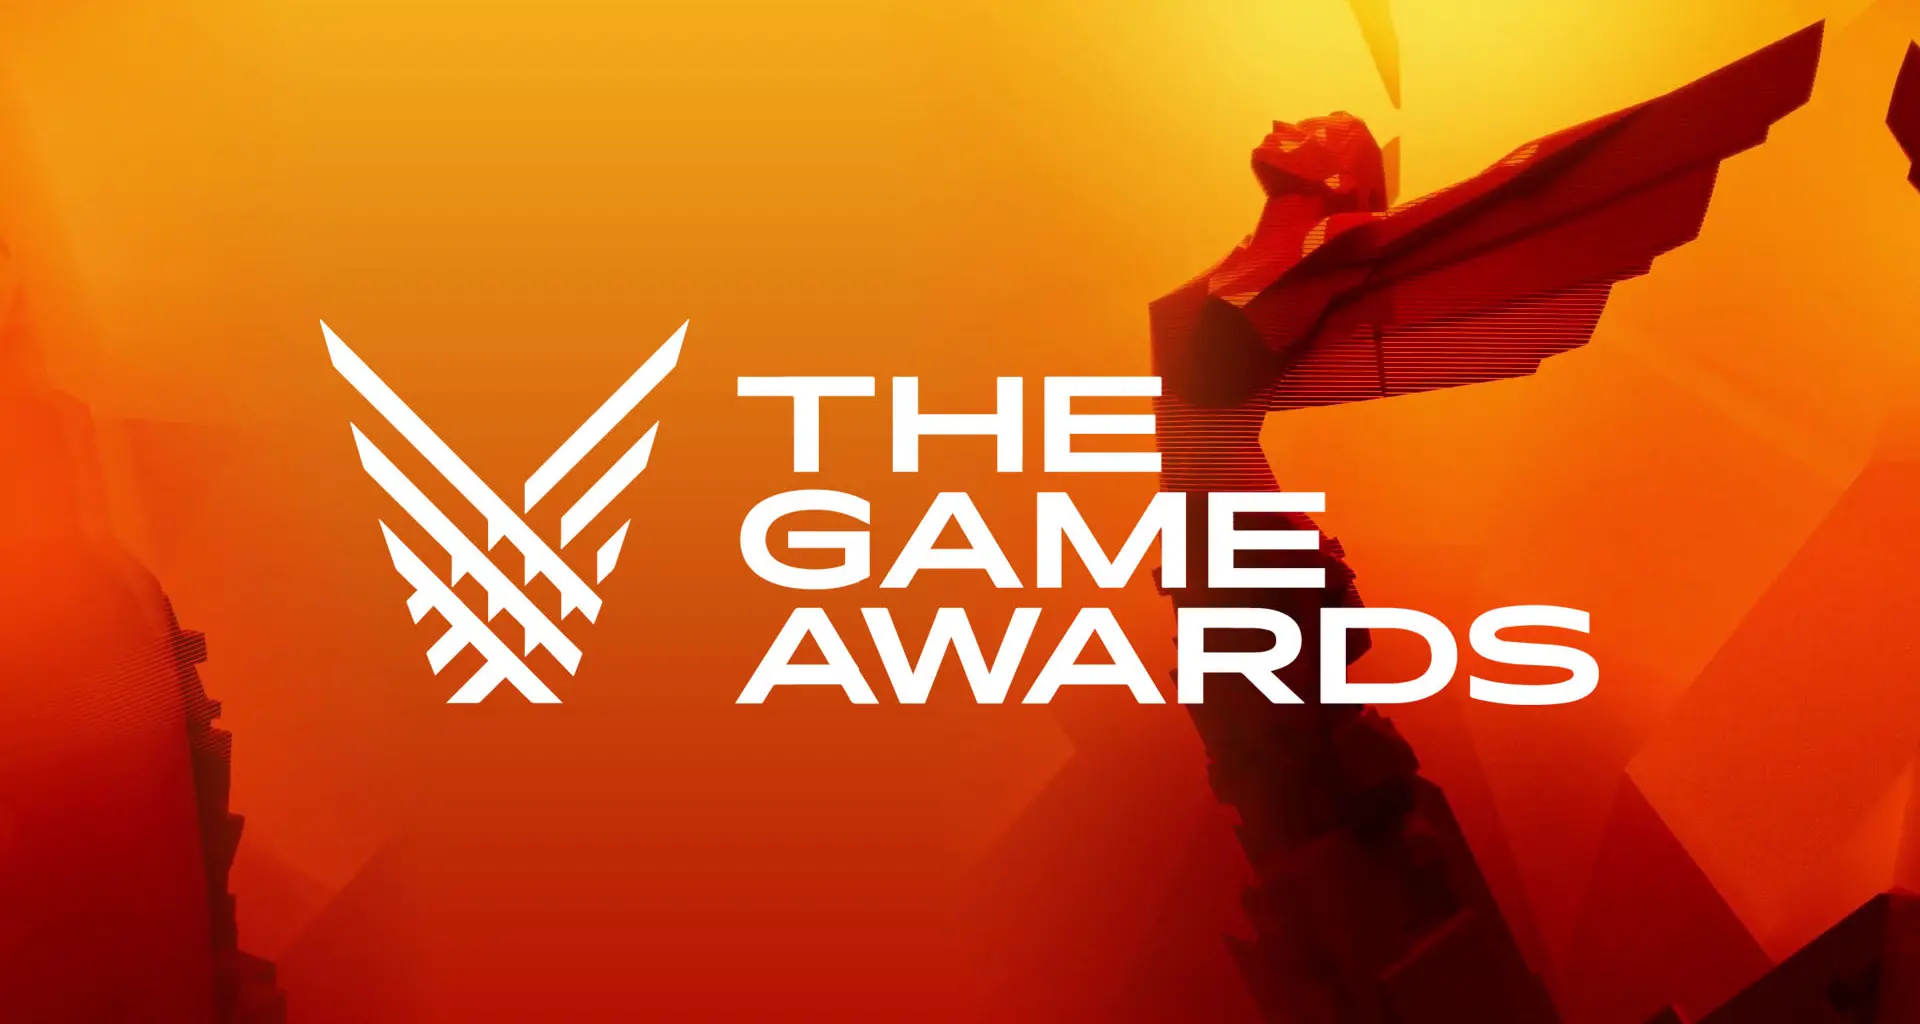 Saiba o que esperar e os favoritos na premiação The Game Awards 2017